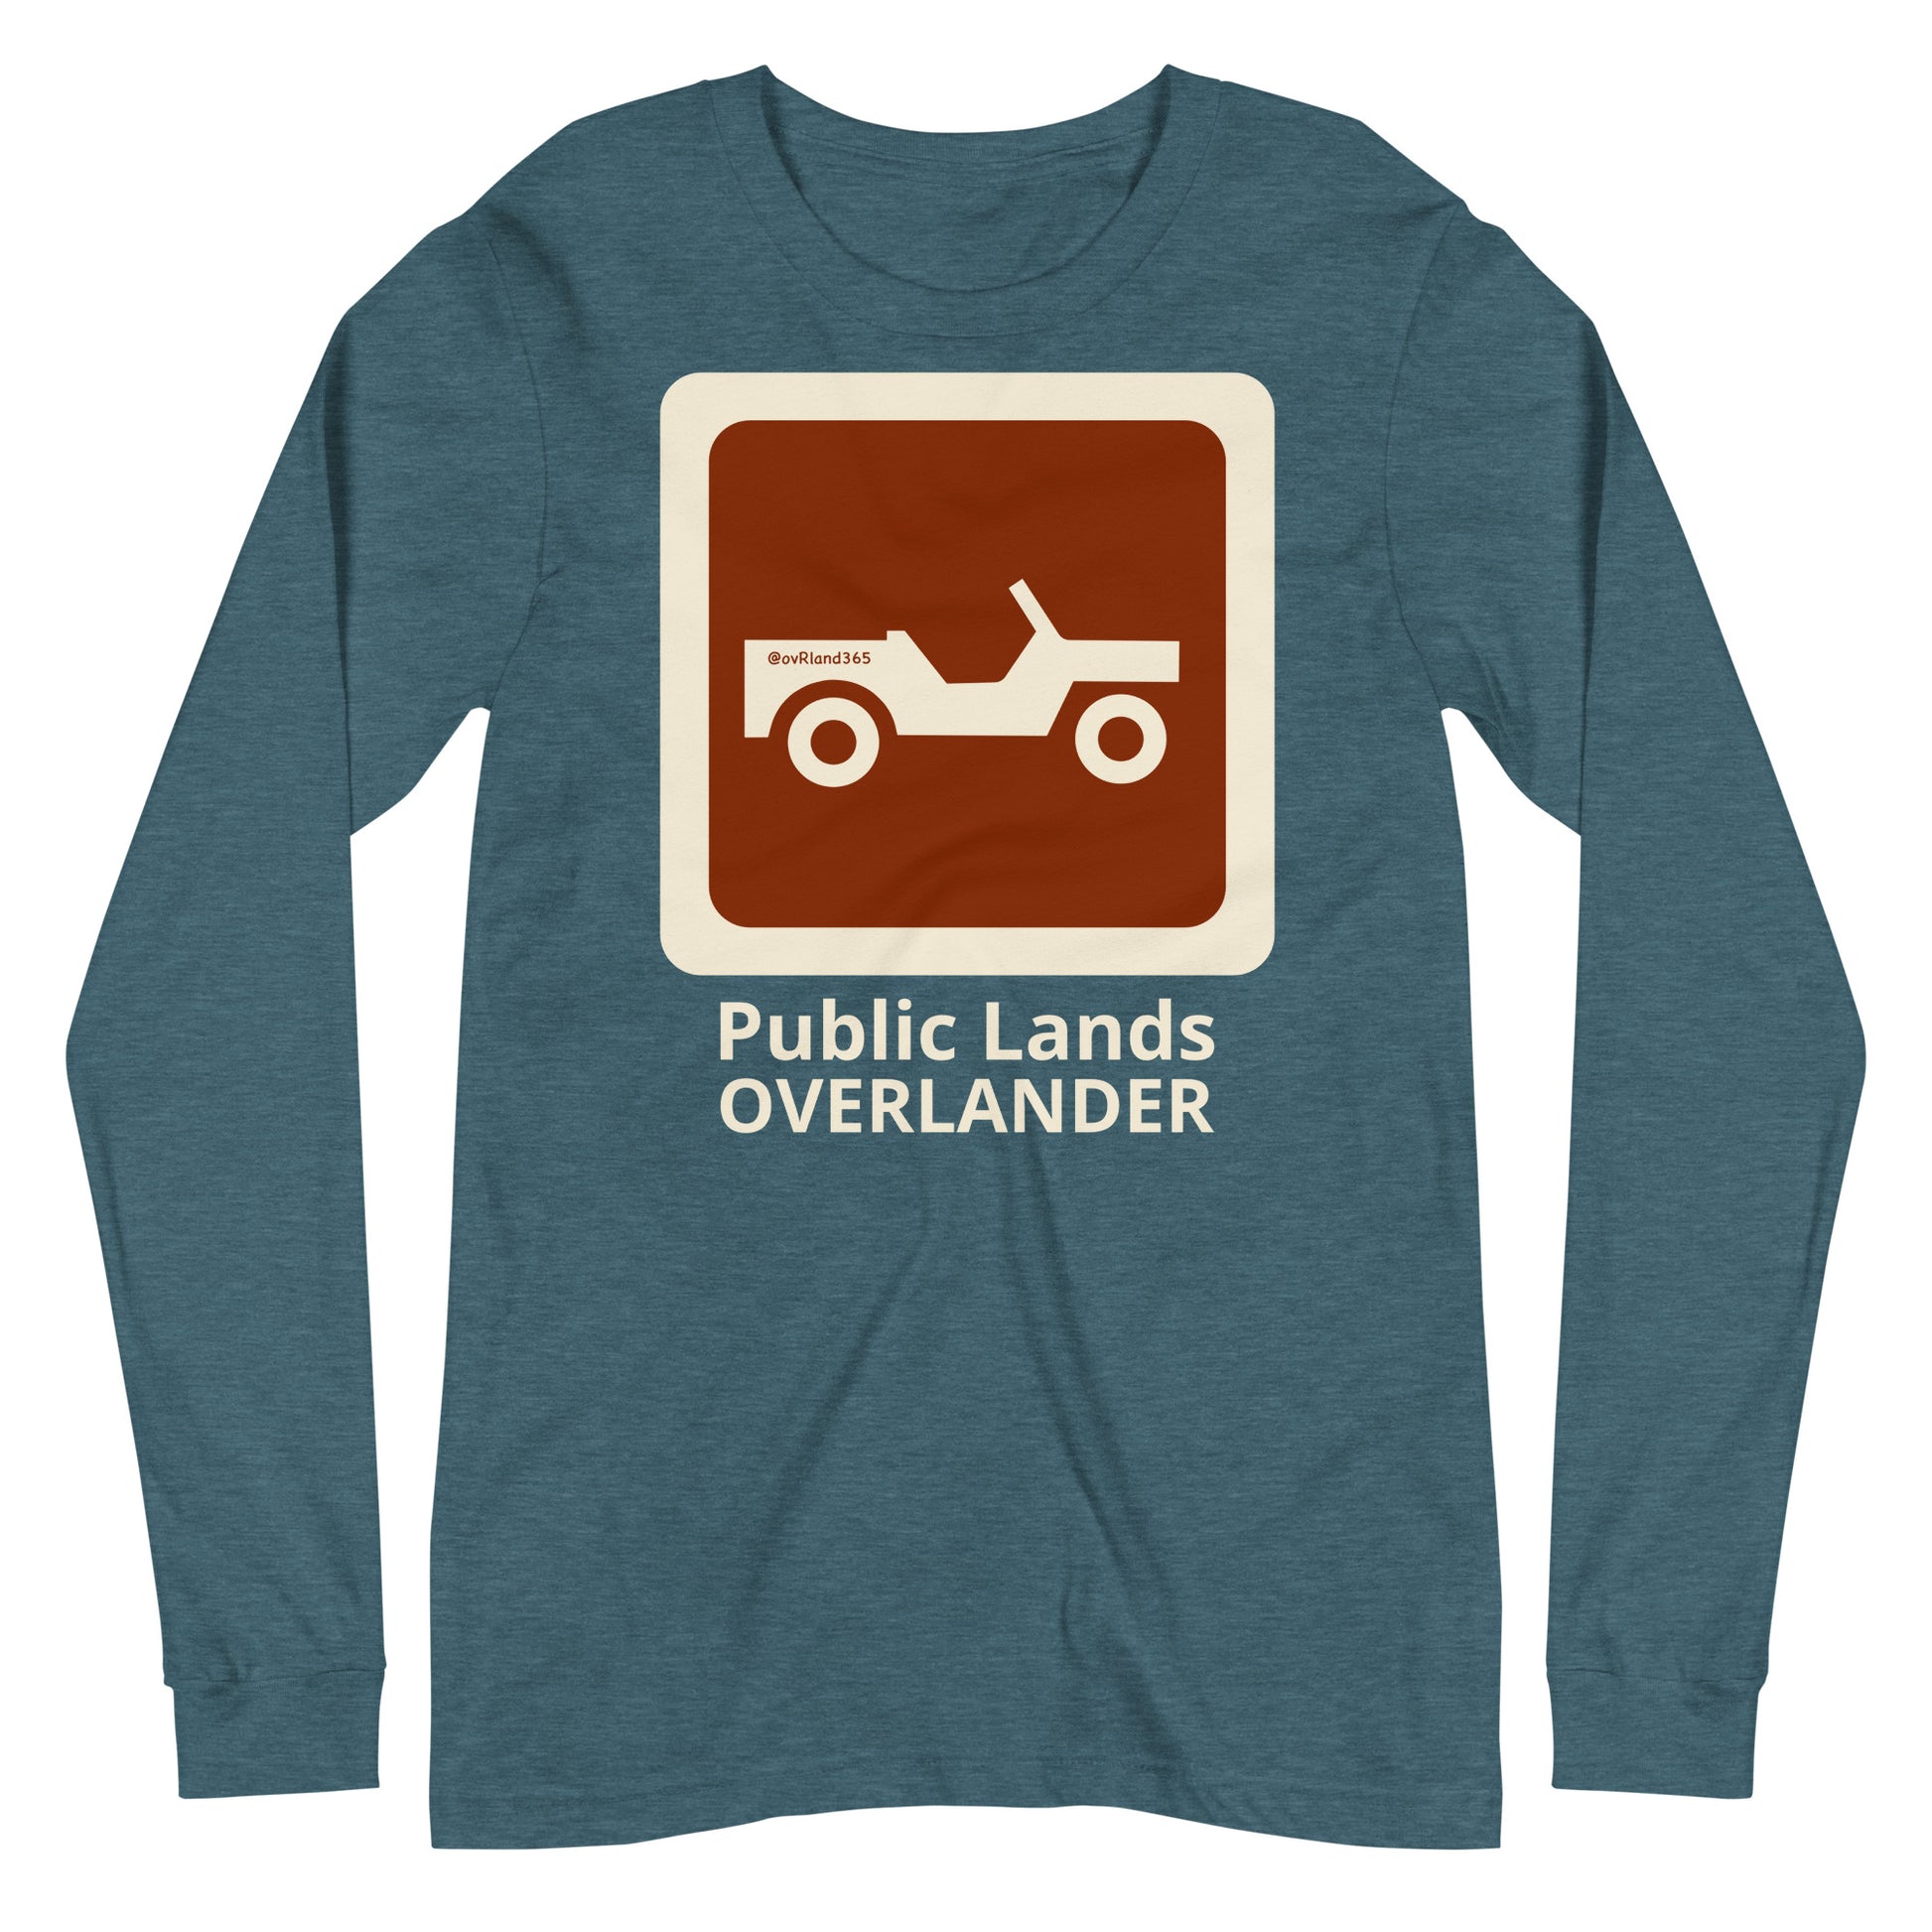 Teal Public Lands OVERLANDER long-sleeve. overland365.com